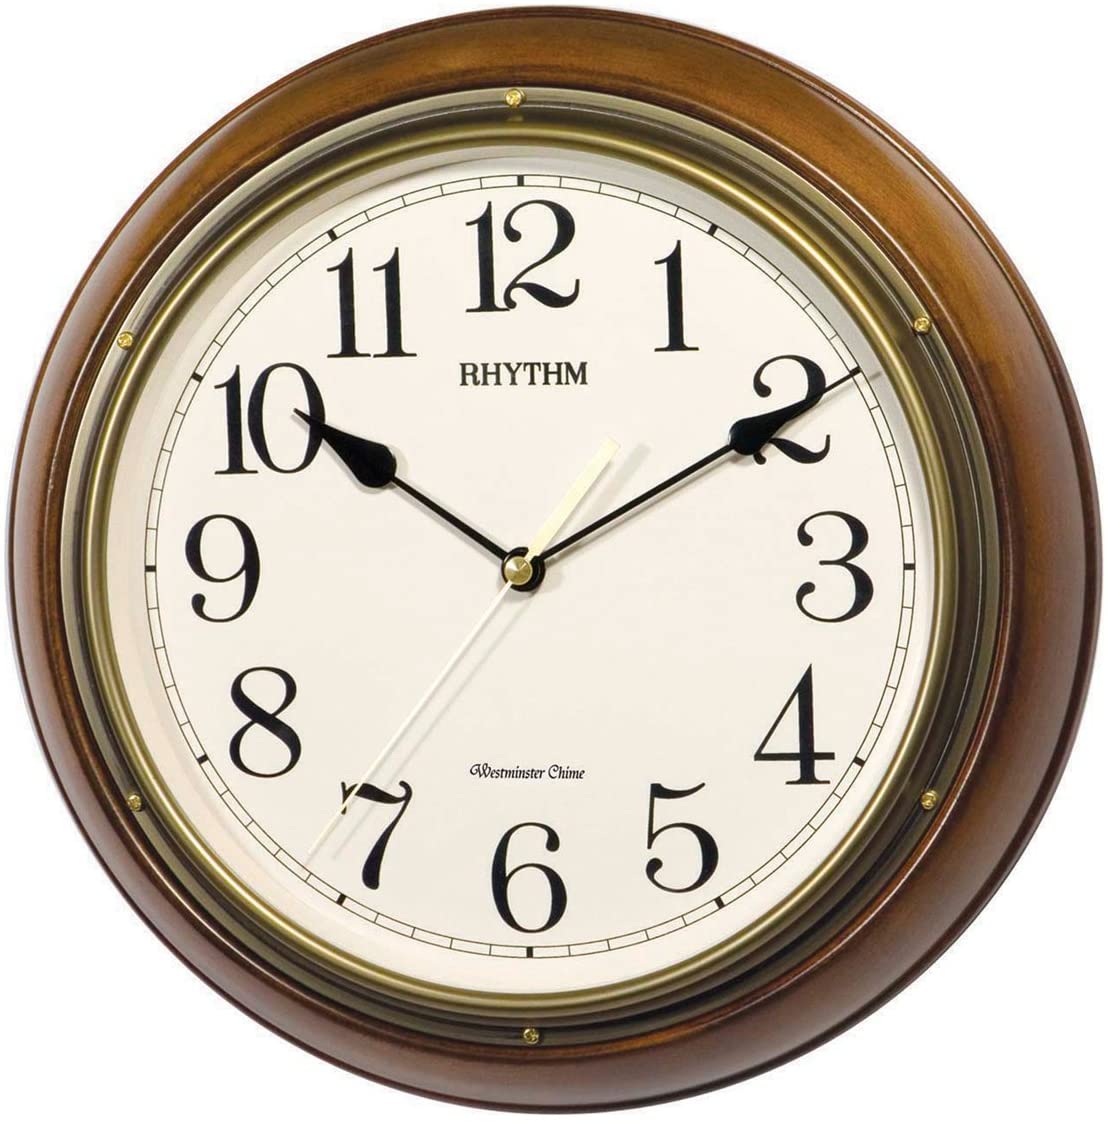 Rhythm Wall Clock, Wooden Case, CMH722CR06